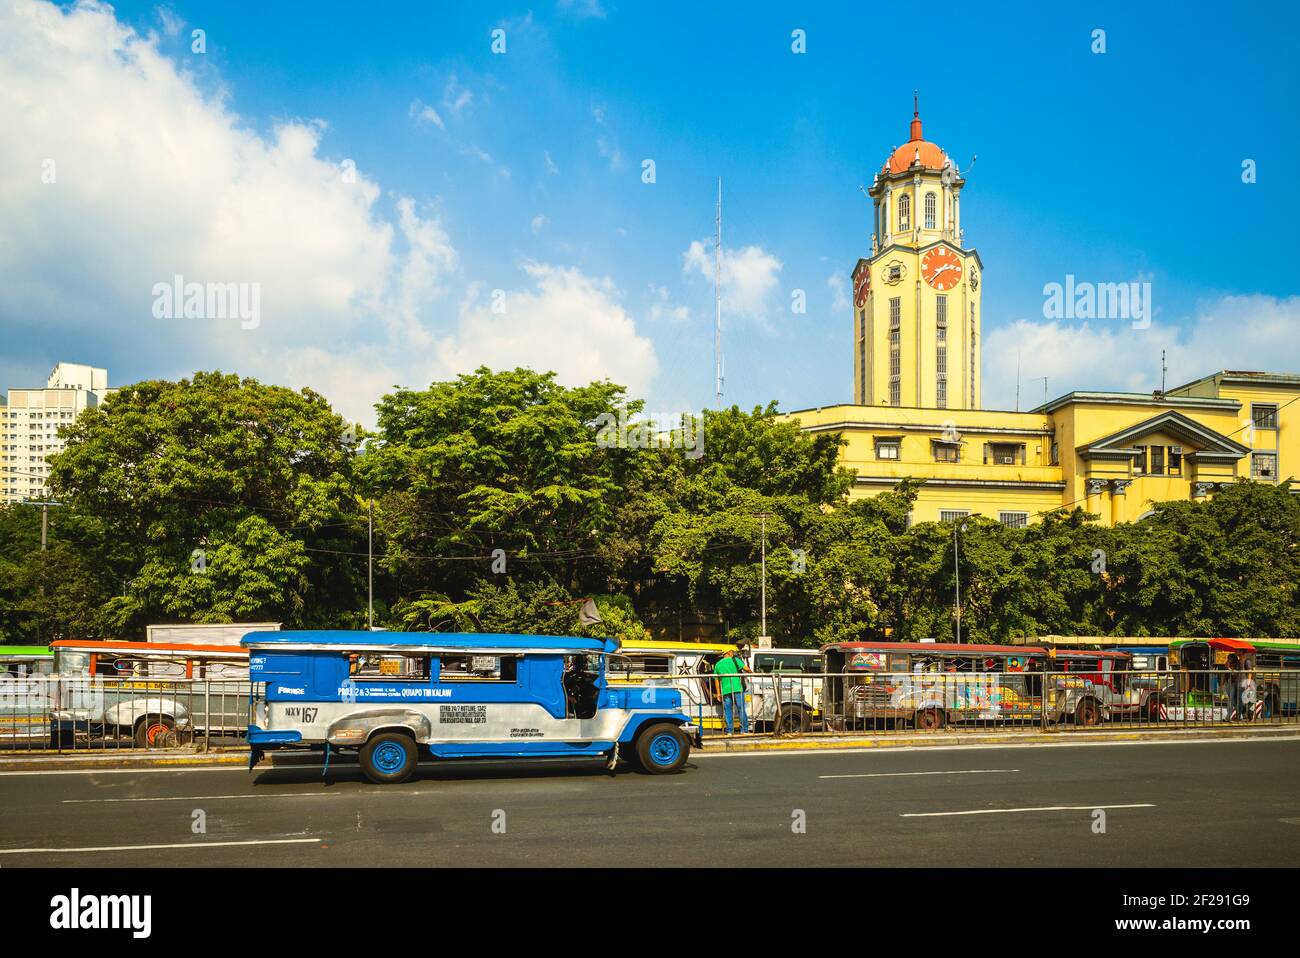 8 aprile 2019: Torre dell'Orologio del Municipio di Manila con la jeepney. La torre dell'orologio, nel centro storico di Ermita, Manila, filippine, è stata progettata da UN Foto Stock